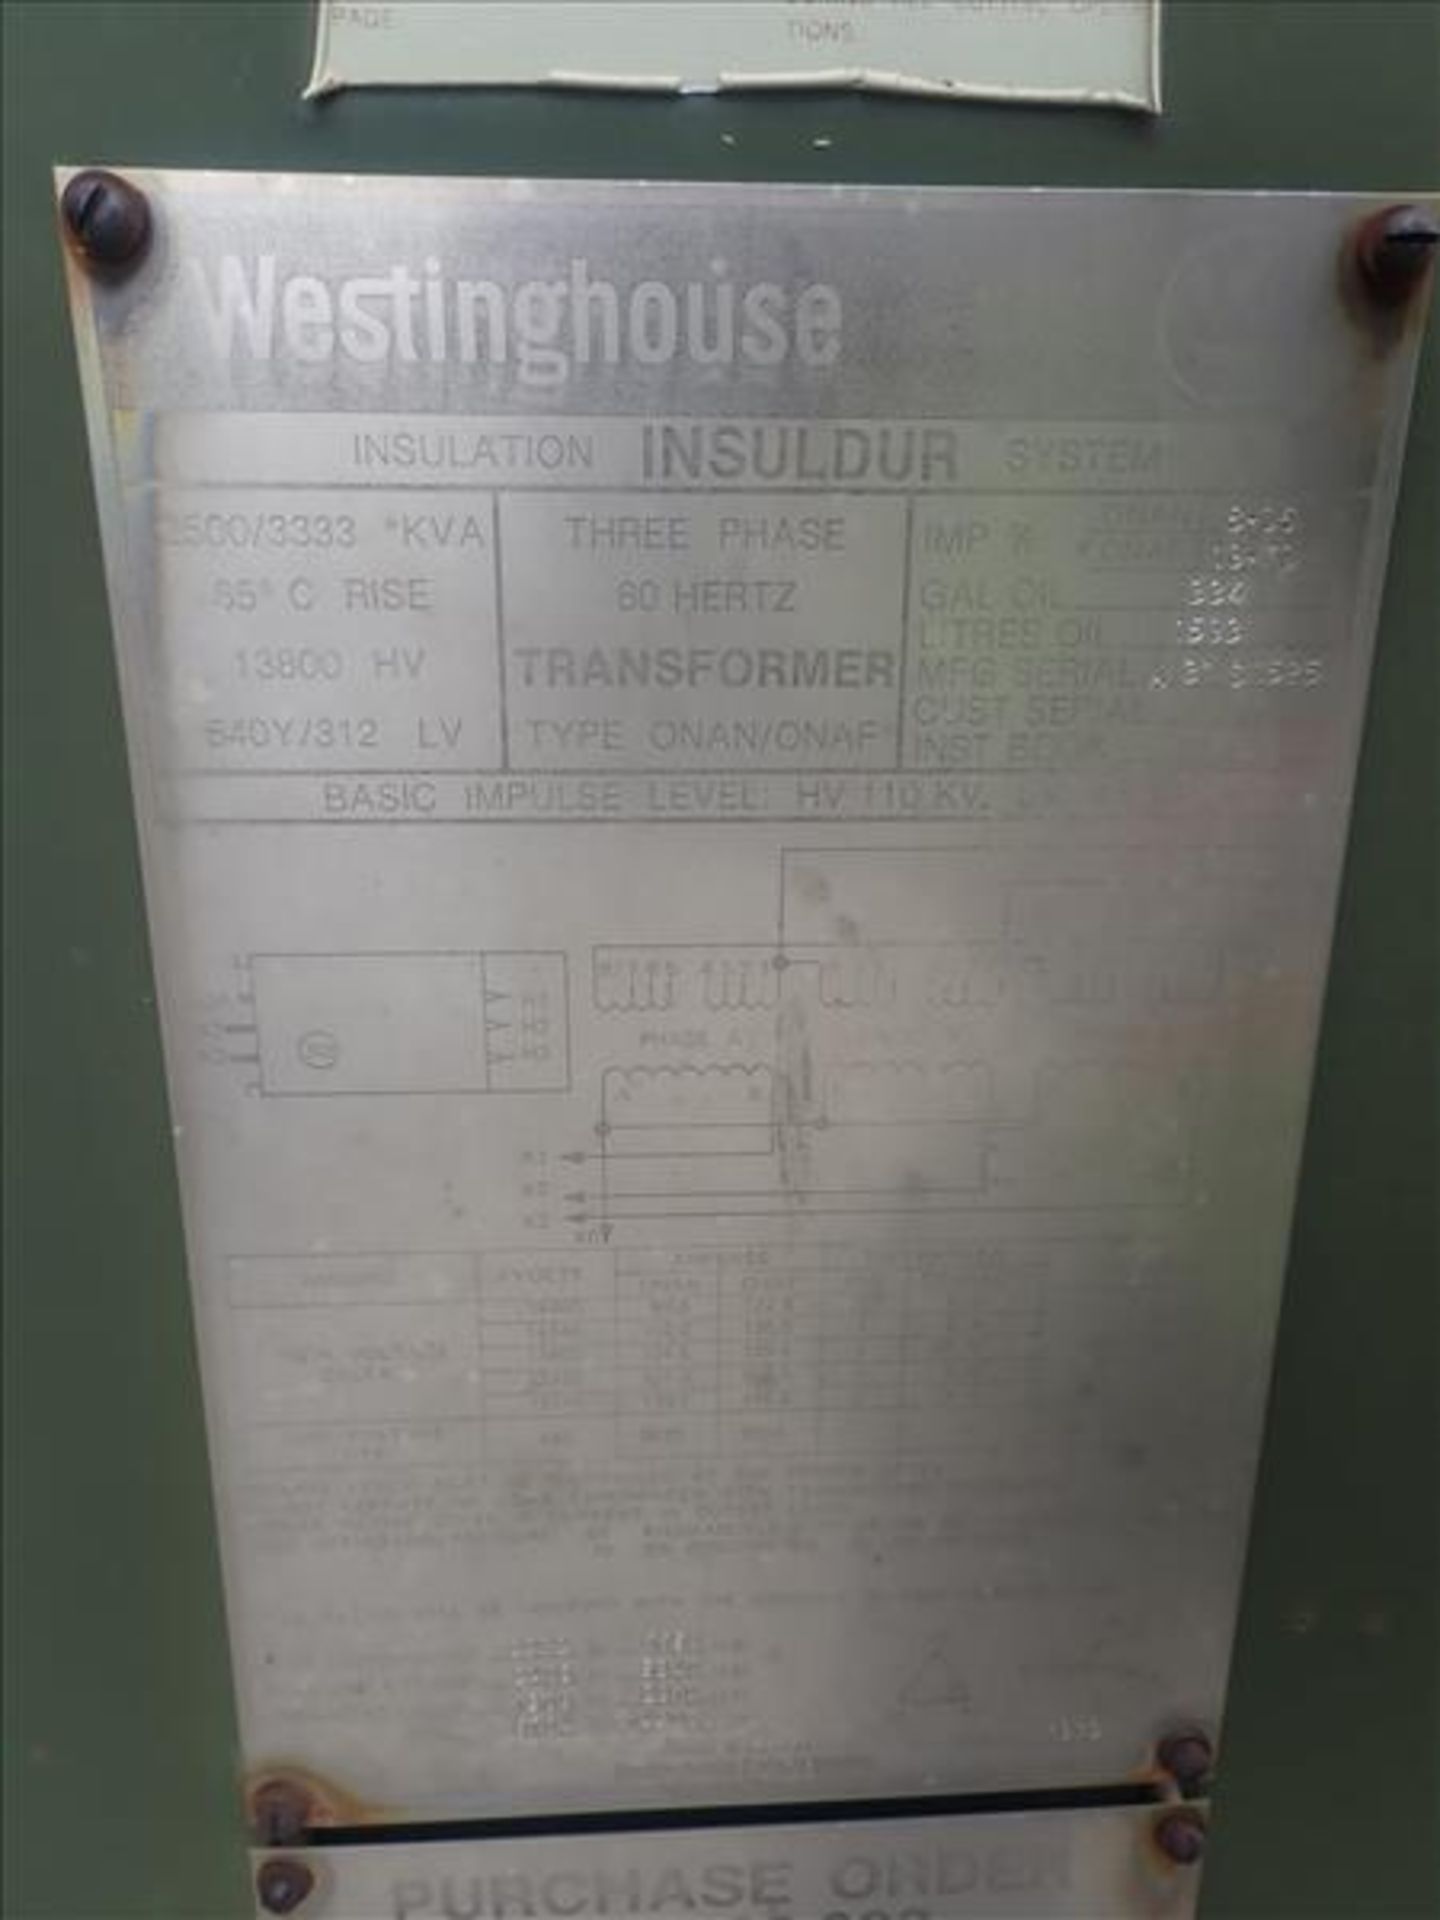 Westinghouse transformer, 2500/3333 KVA, 13800 LV, 540Y/312 LV (Tag 9110 Loc 777) - Image 2 of 2